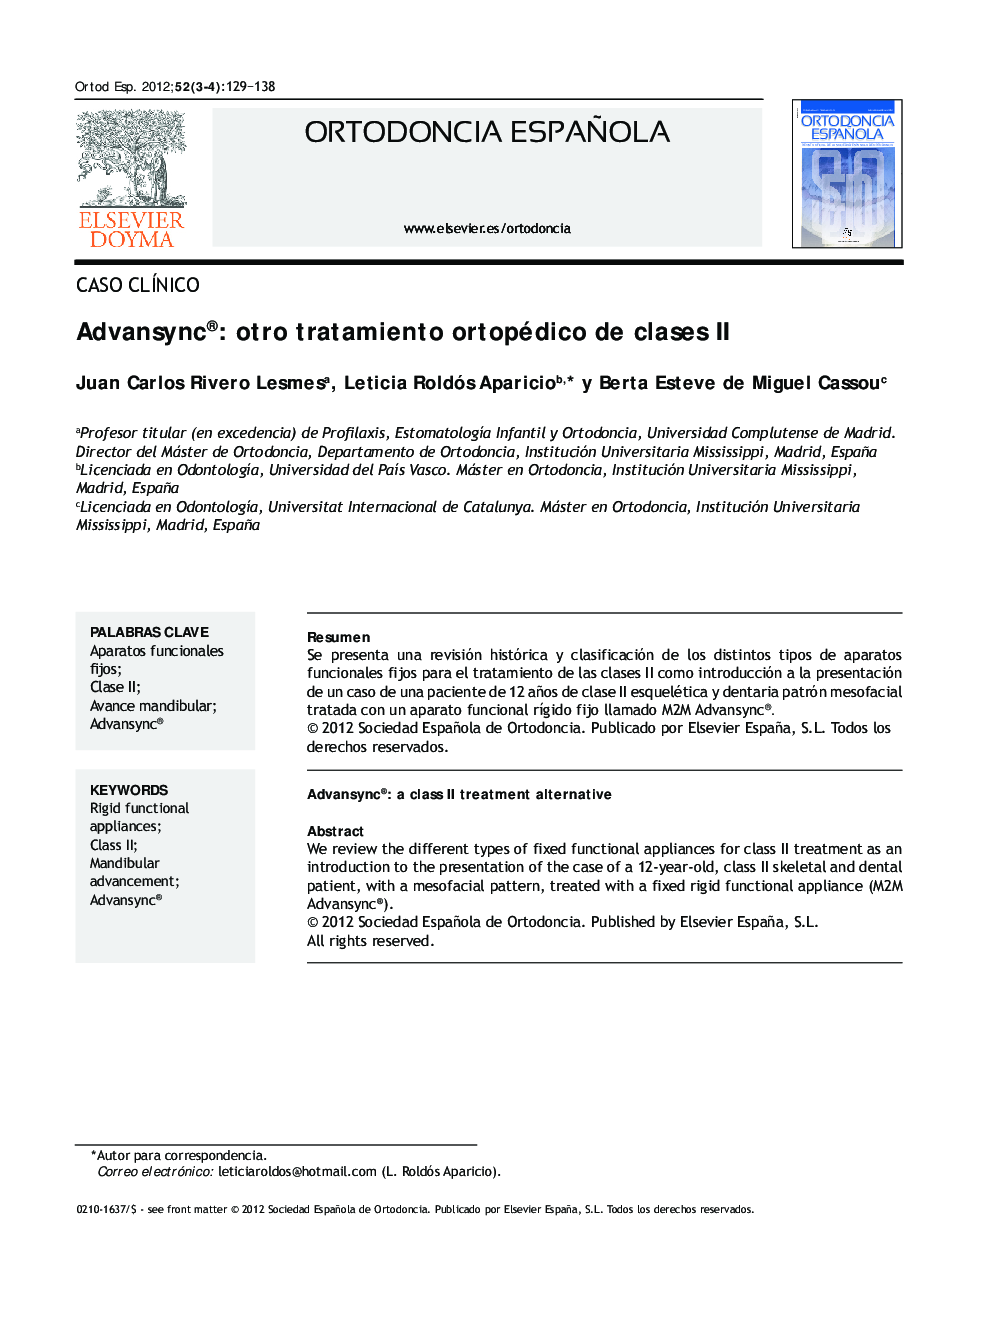 Advansync®: otro tratamiento ortopédico de clases II